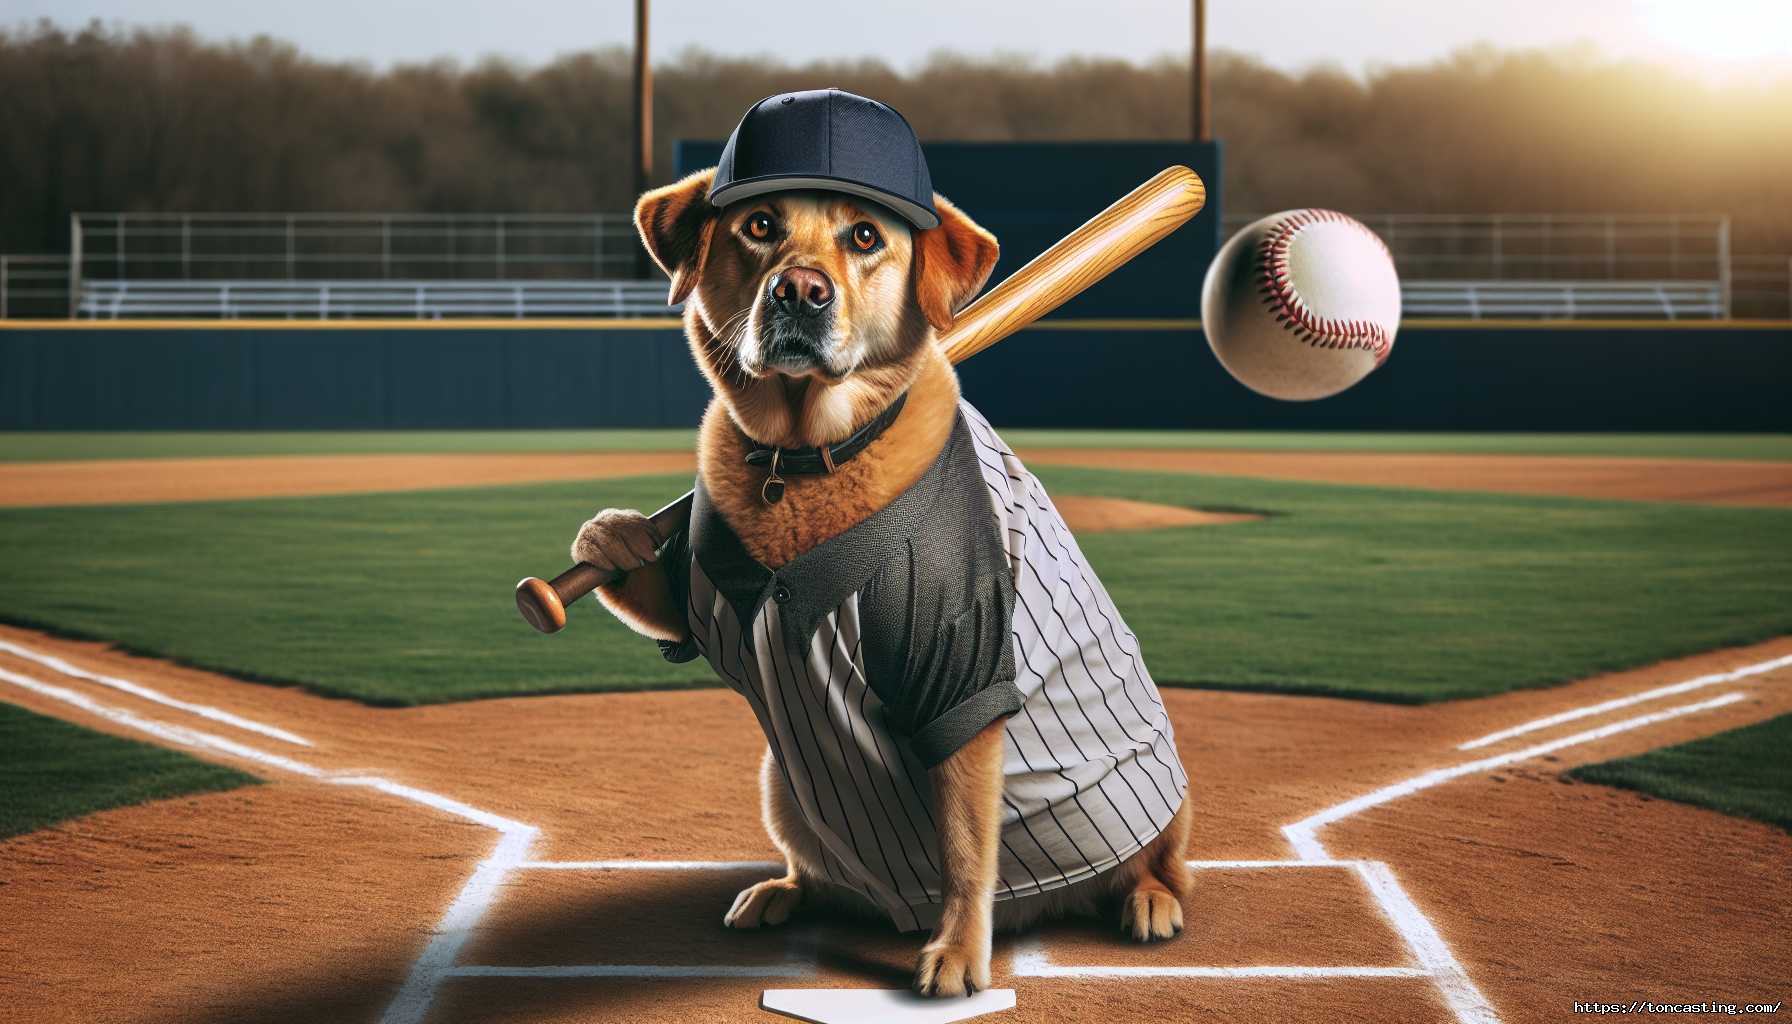 Un chien en tenue de baseball avec une batte prête à frapper une balle.